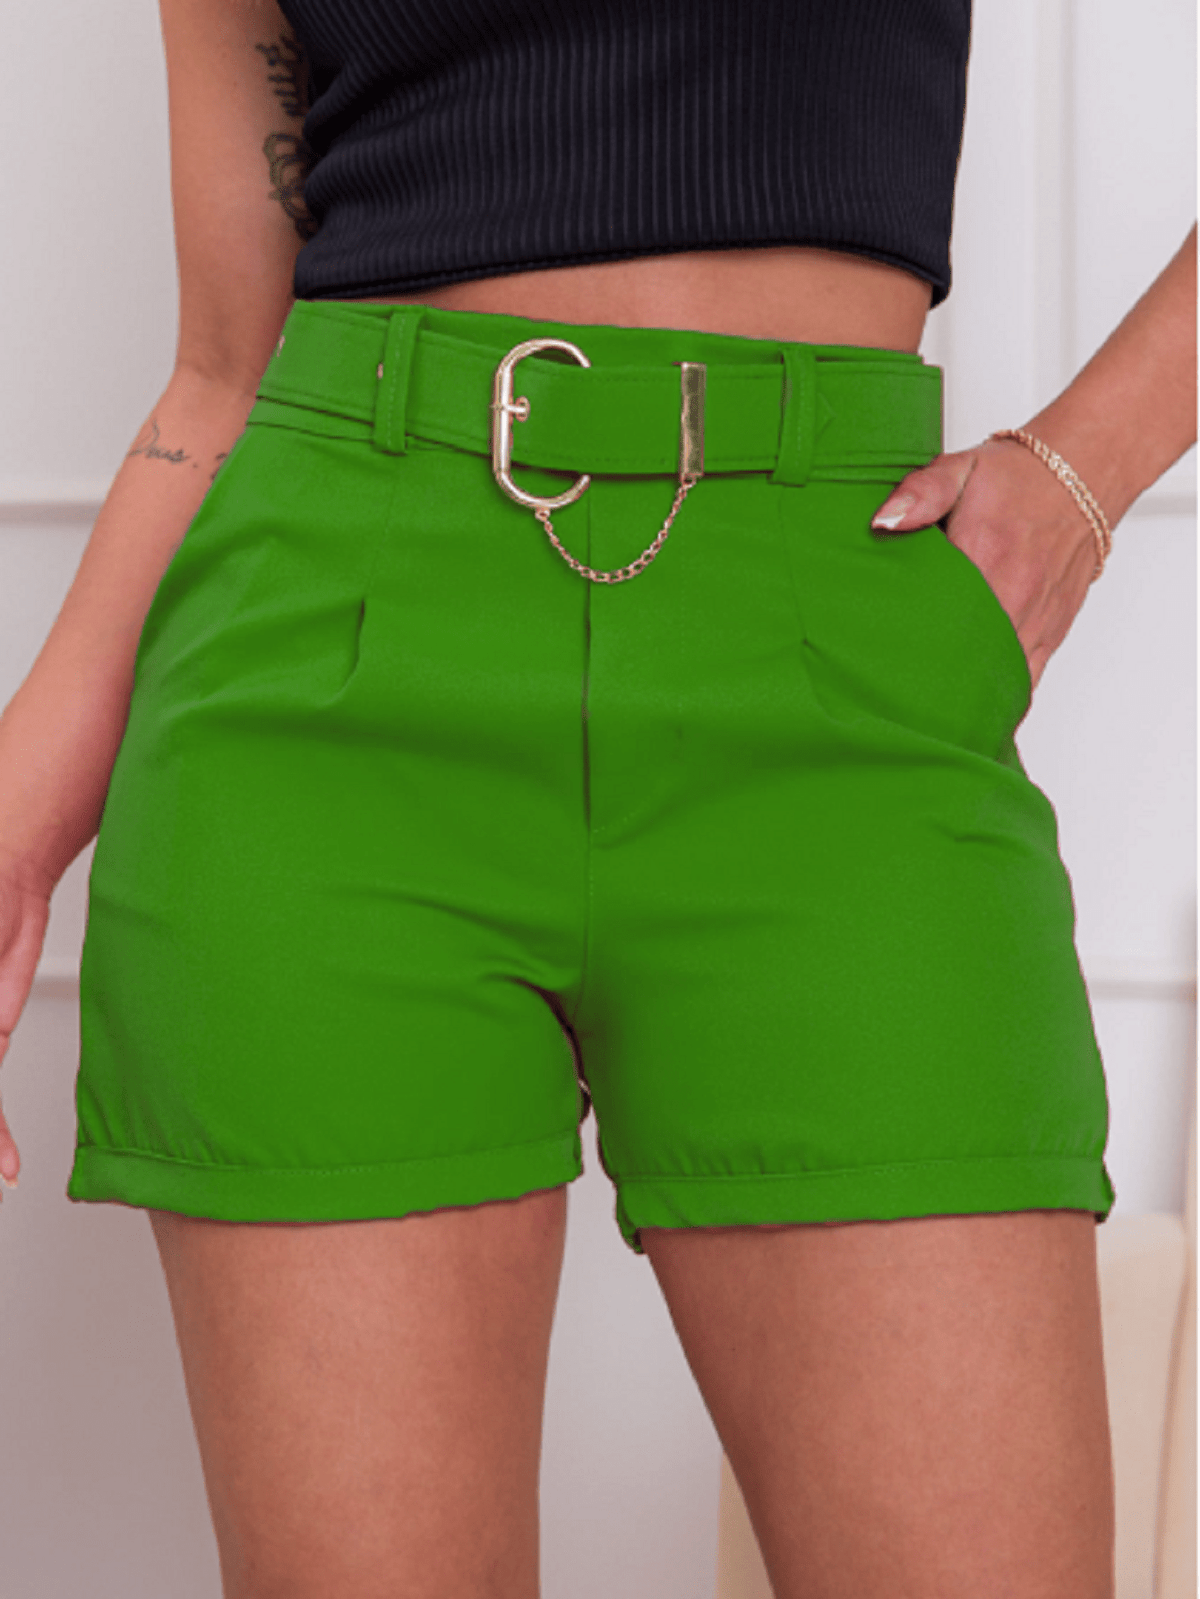 Shorts de alfaiataria (linhão) com cinto removível, bolso na frente